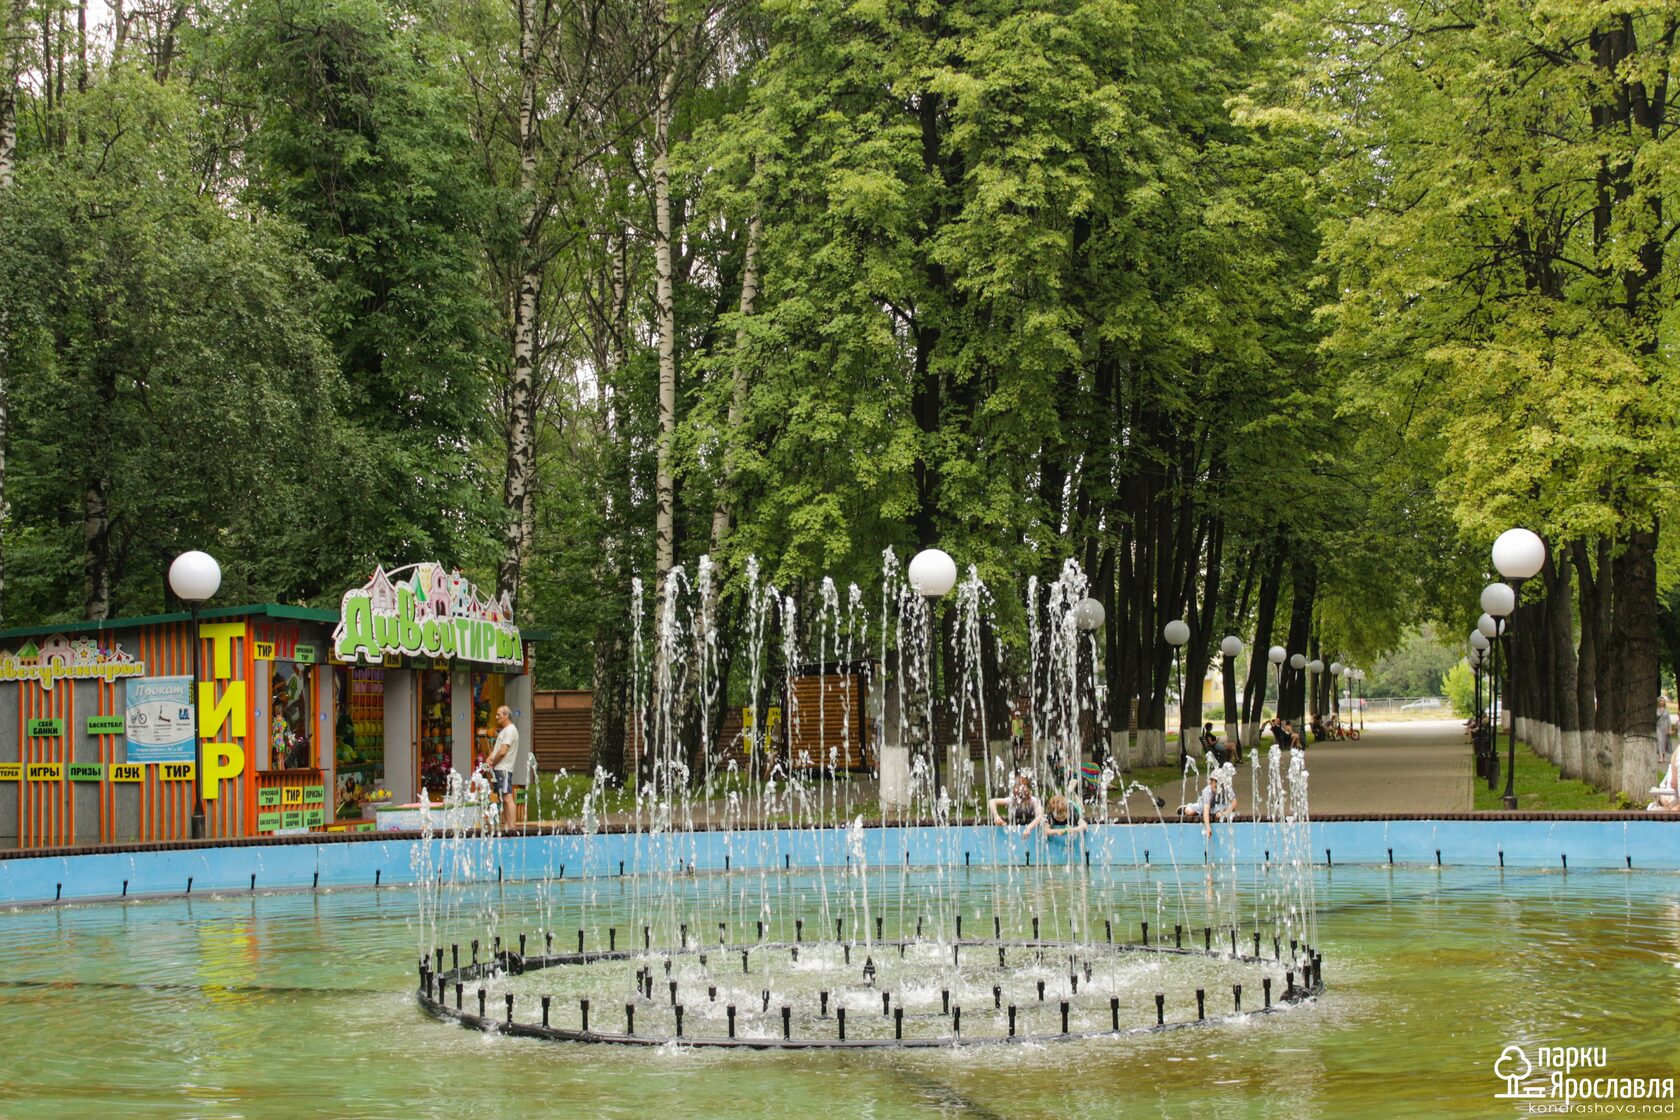 Изумительная скульптура в Юбилейном парке в Ярославле - рассказывает свою историю!